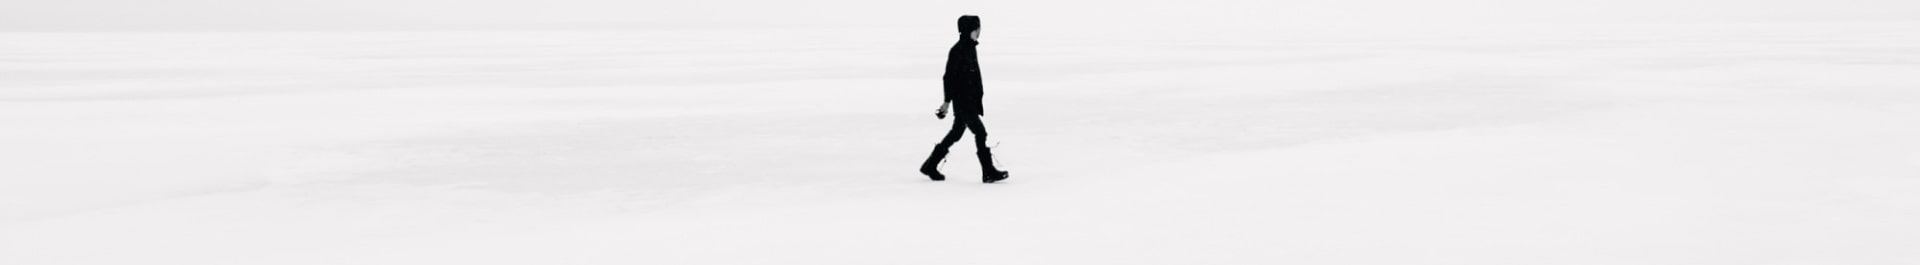 Man walking away